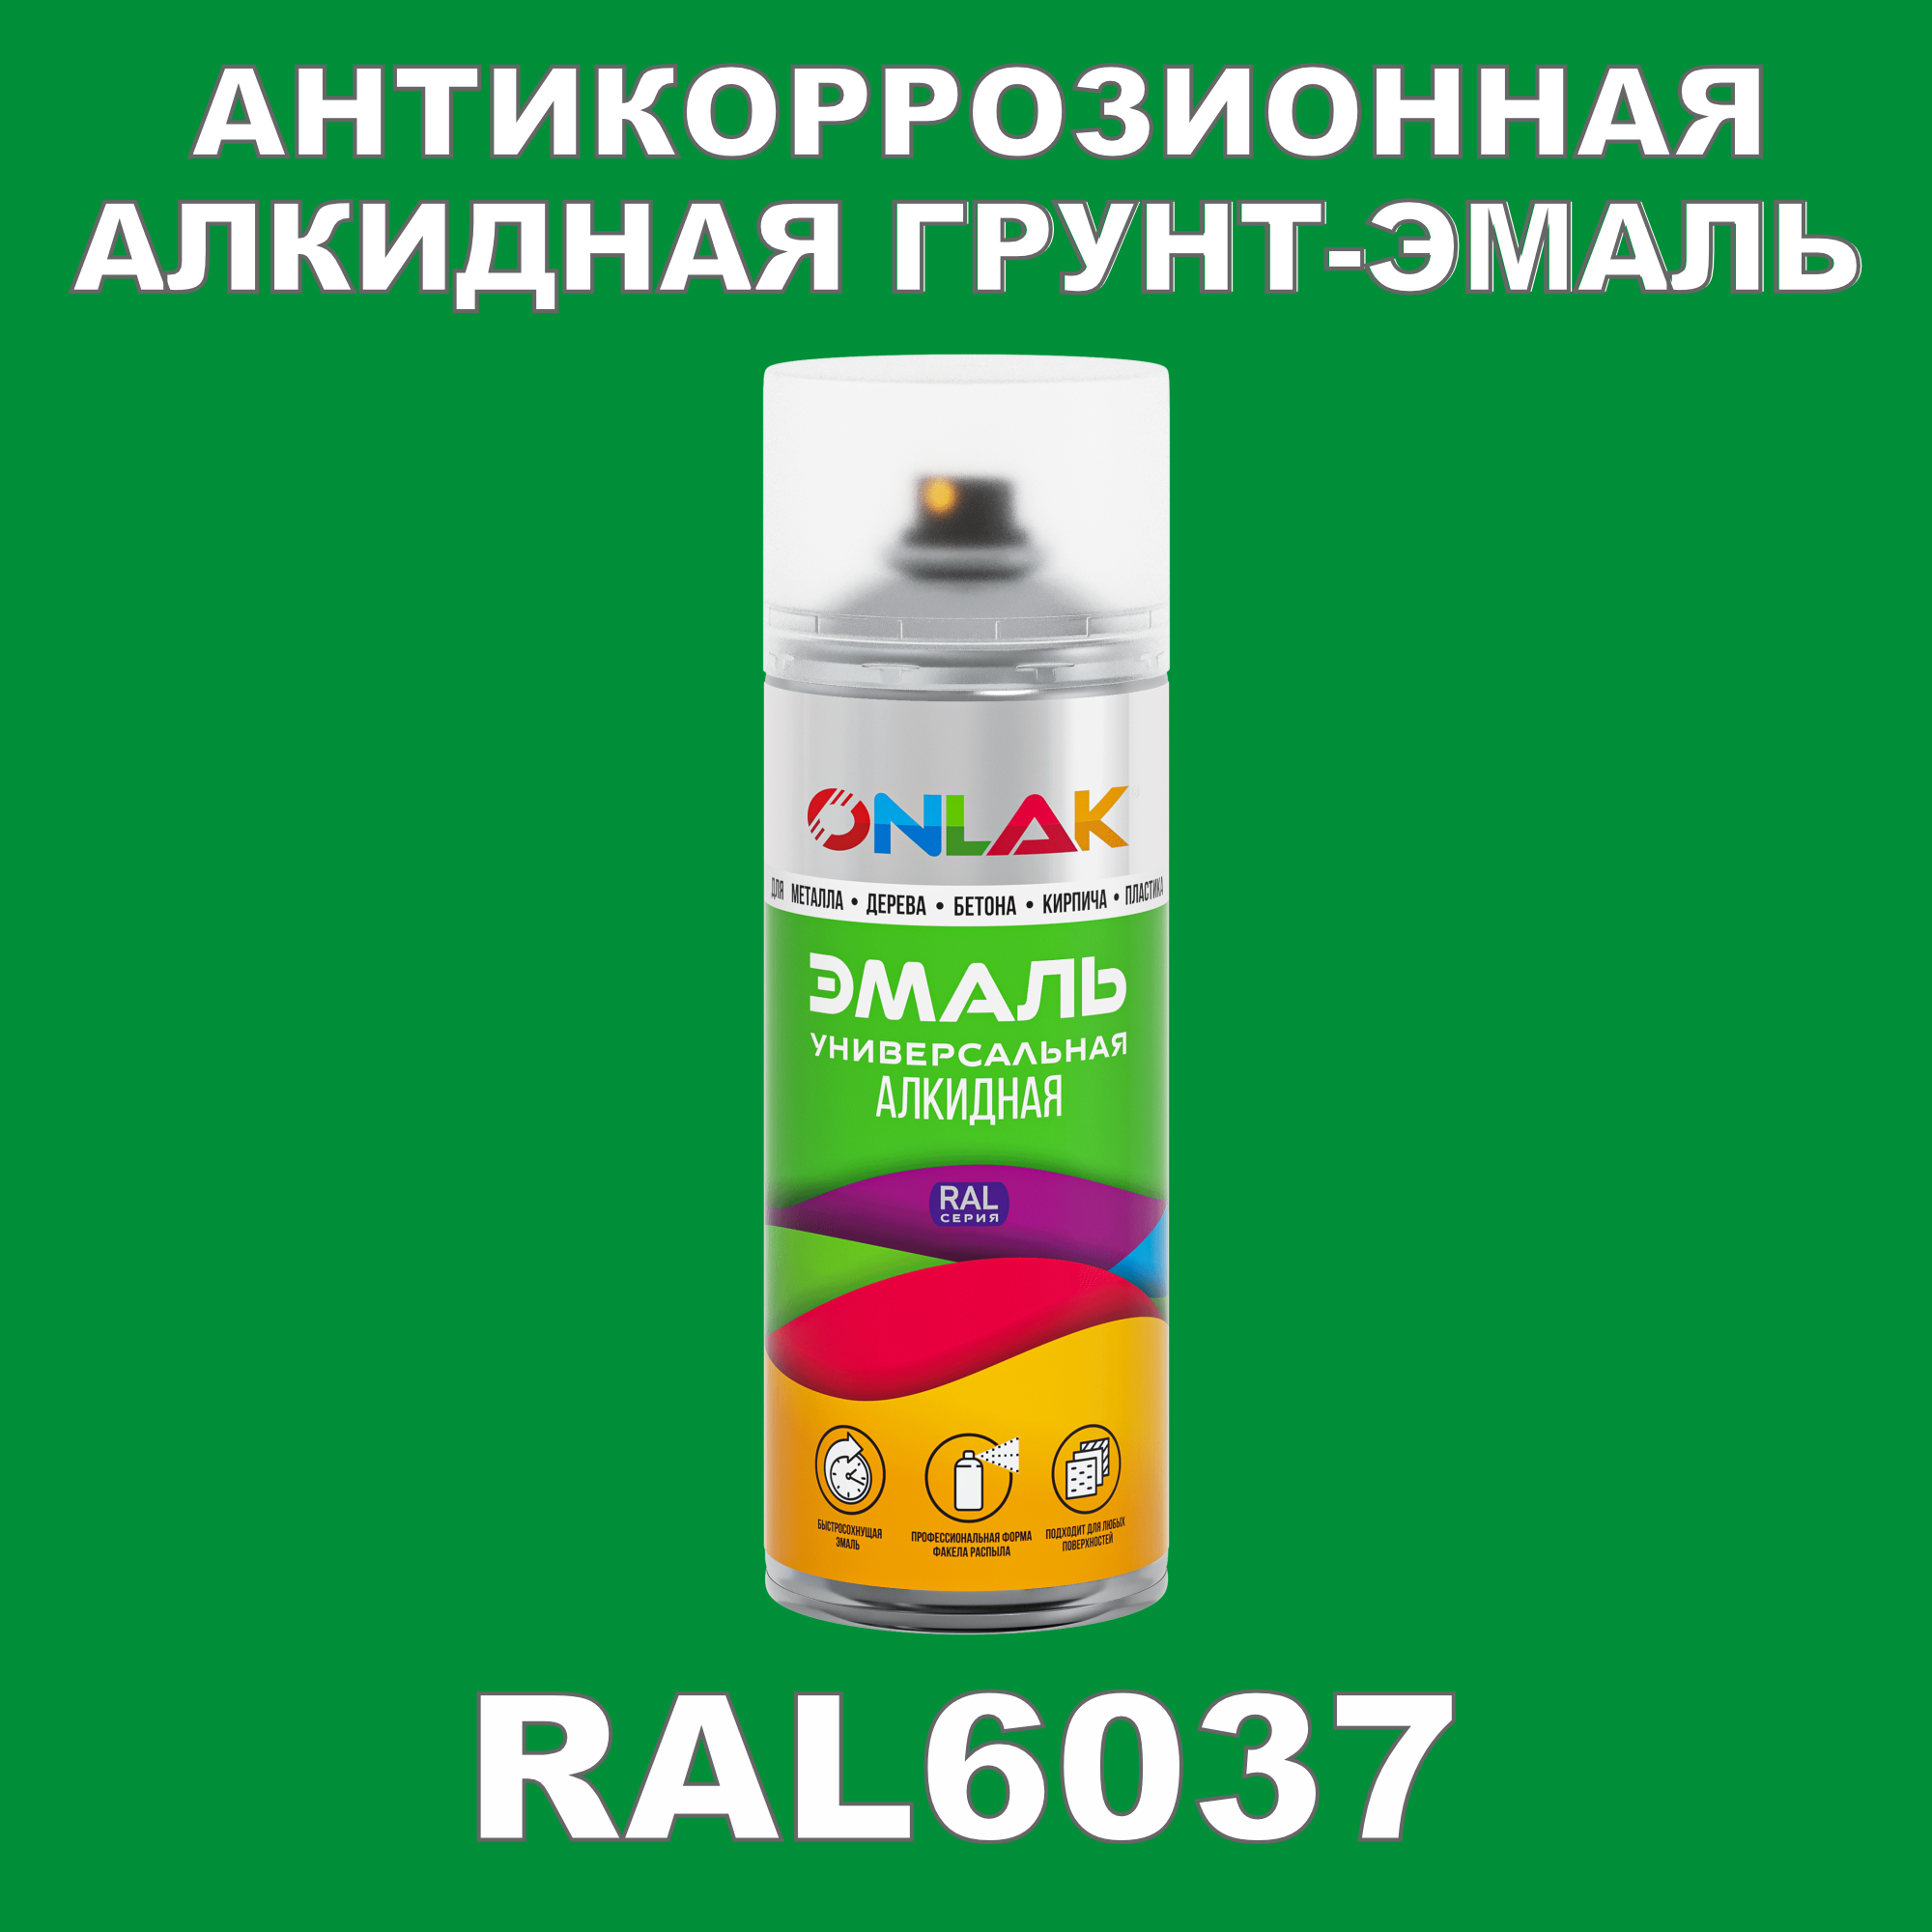 Антикоррозионная грунт-эмаль ONLAK RAL6037 полуматовая для металла и защиты от ржавчины